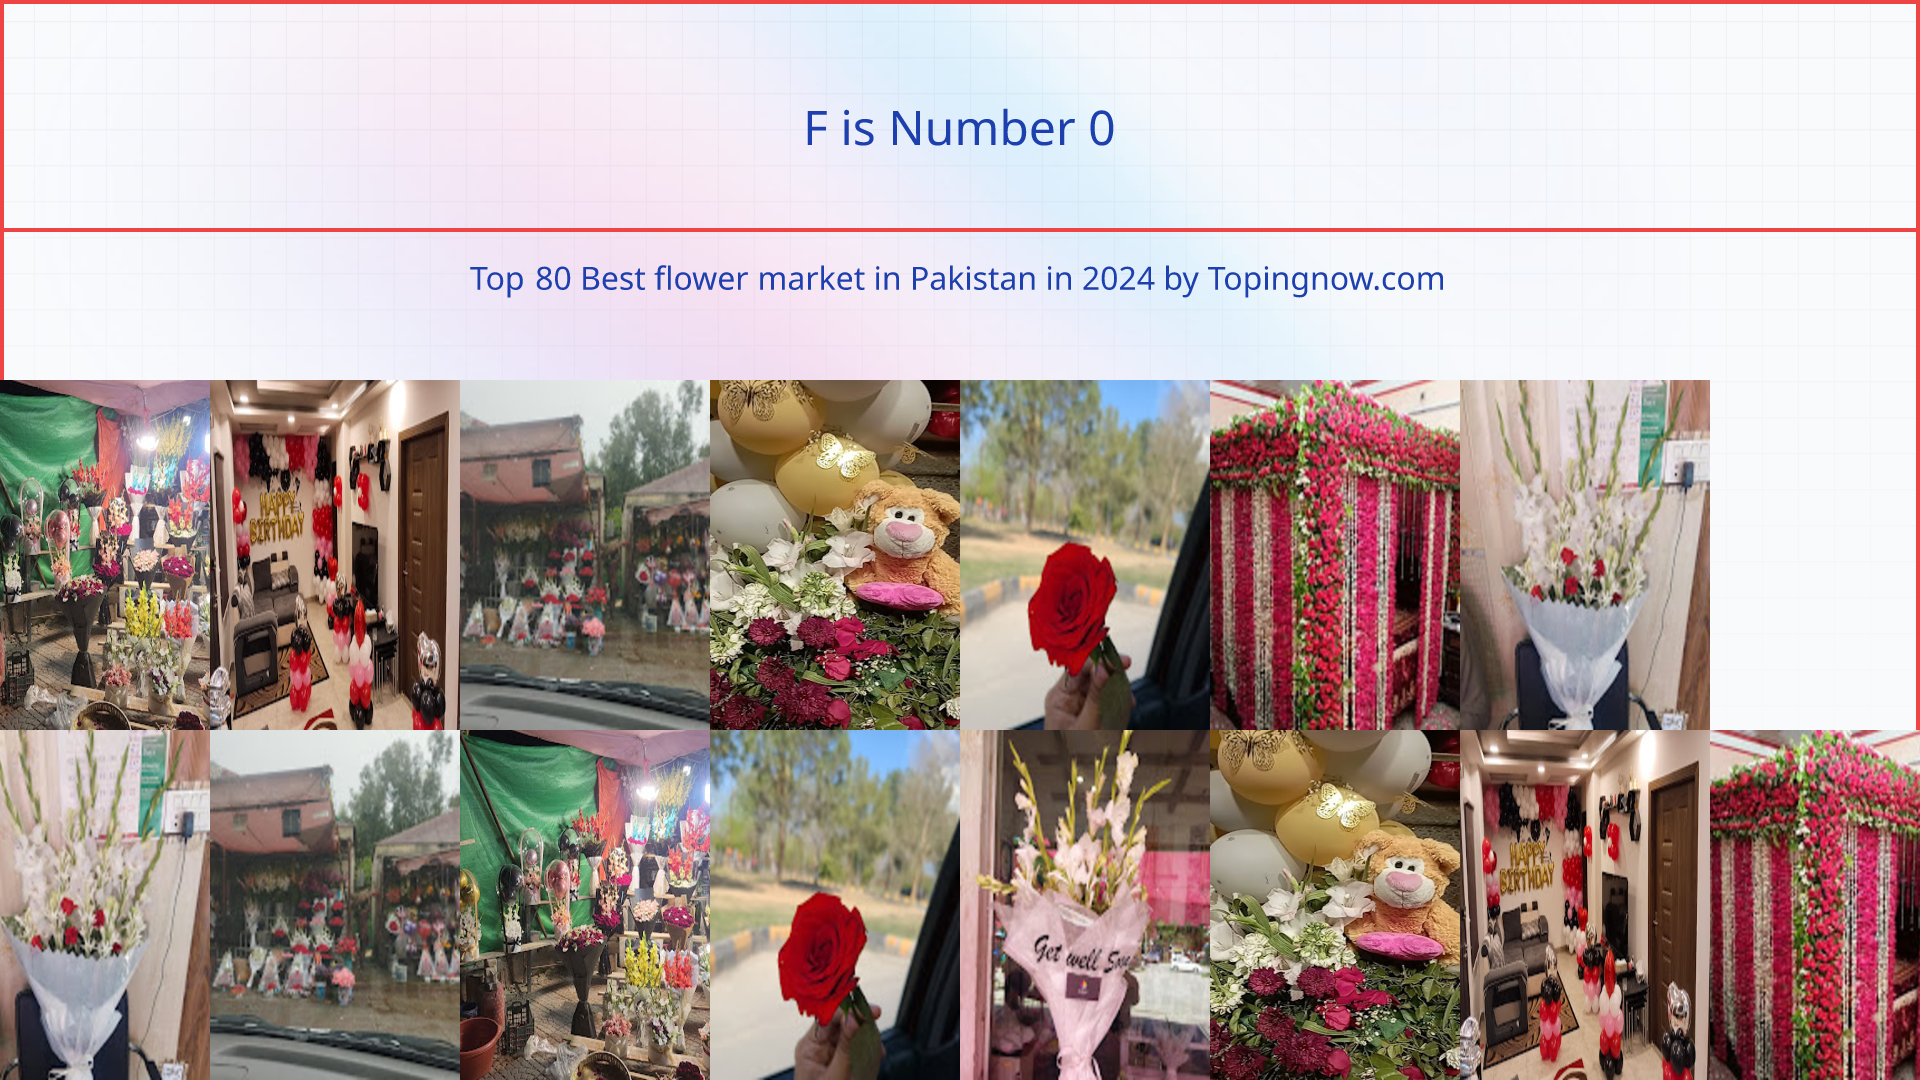 F: Top 80 Best flower market in Pakistan in 2024